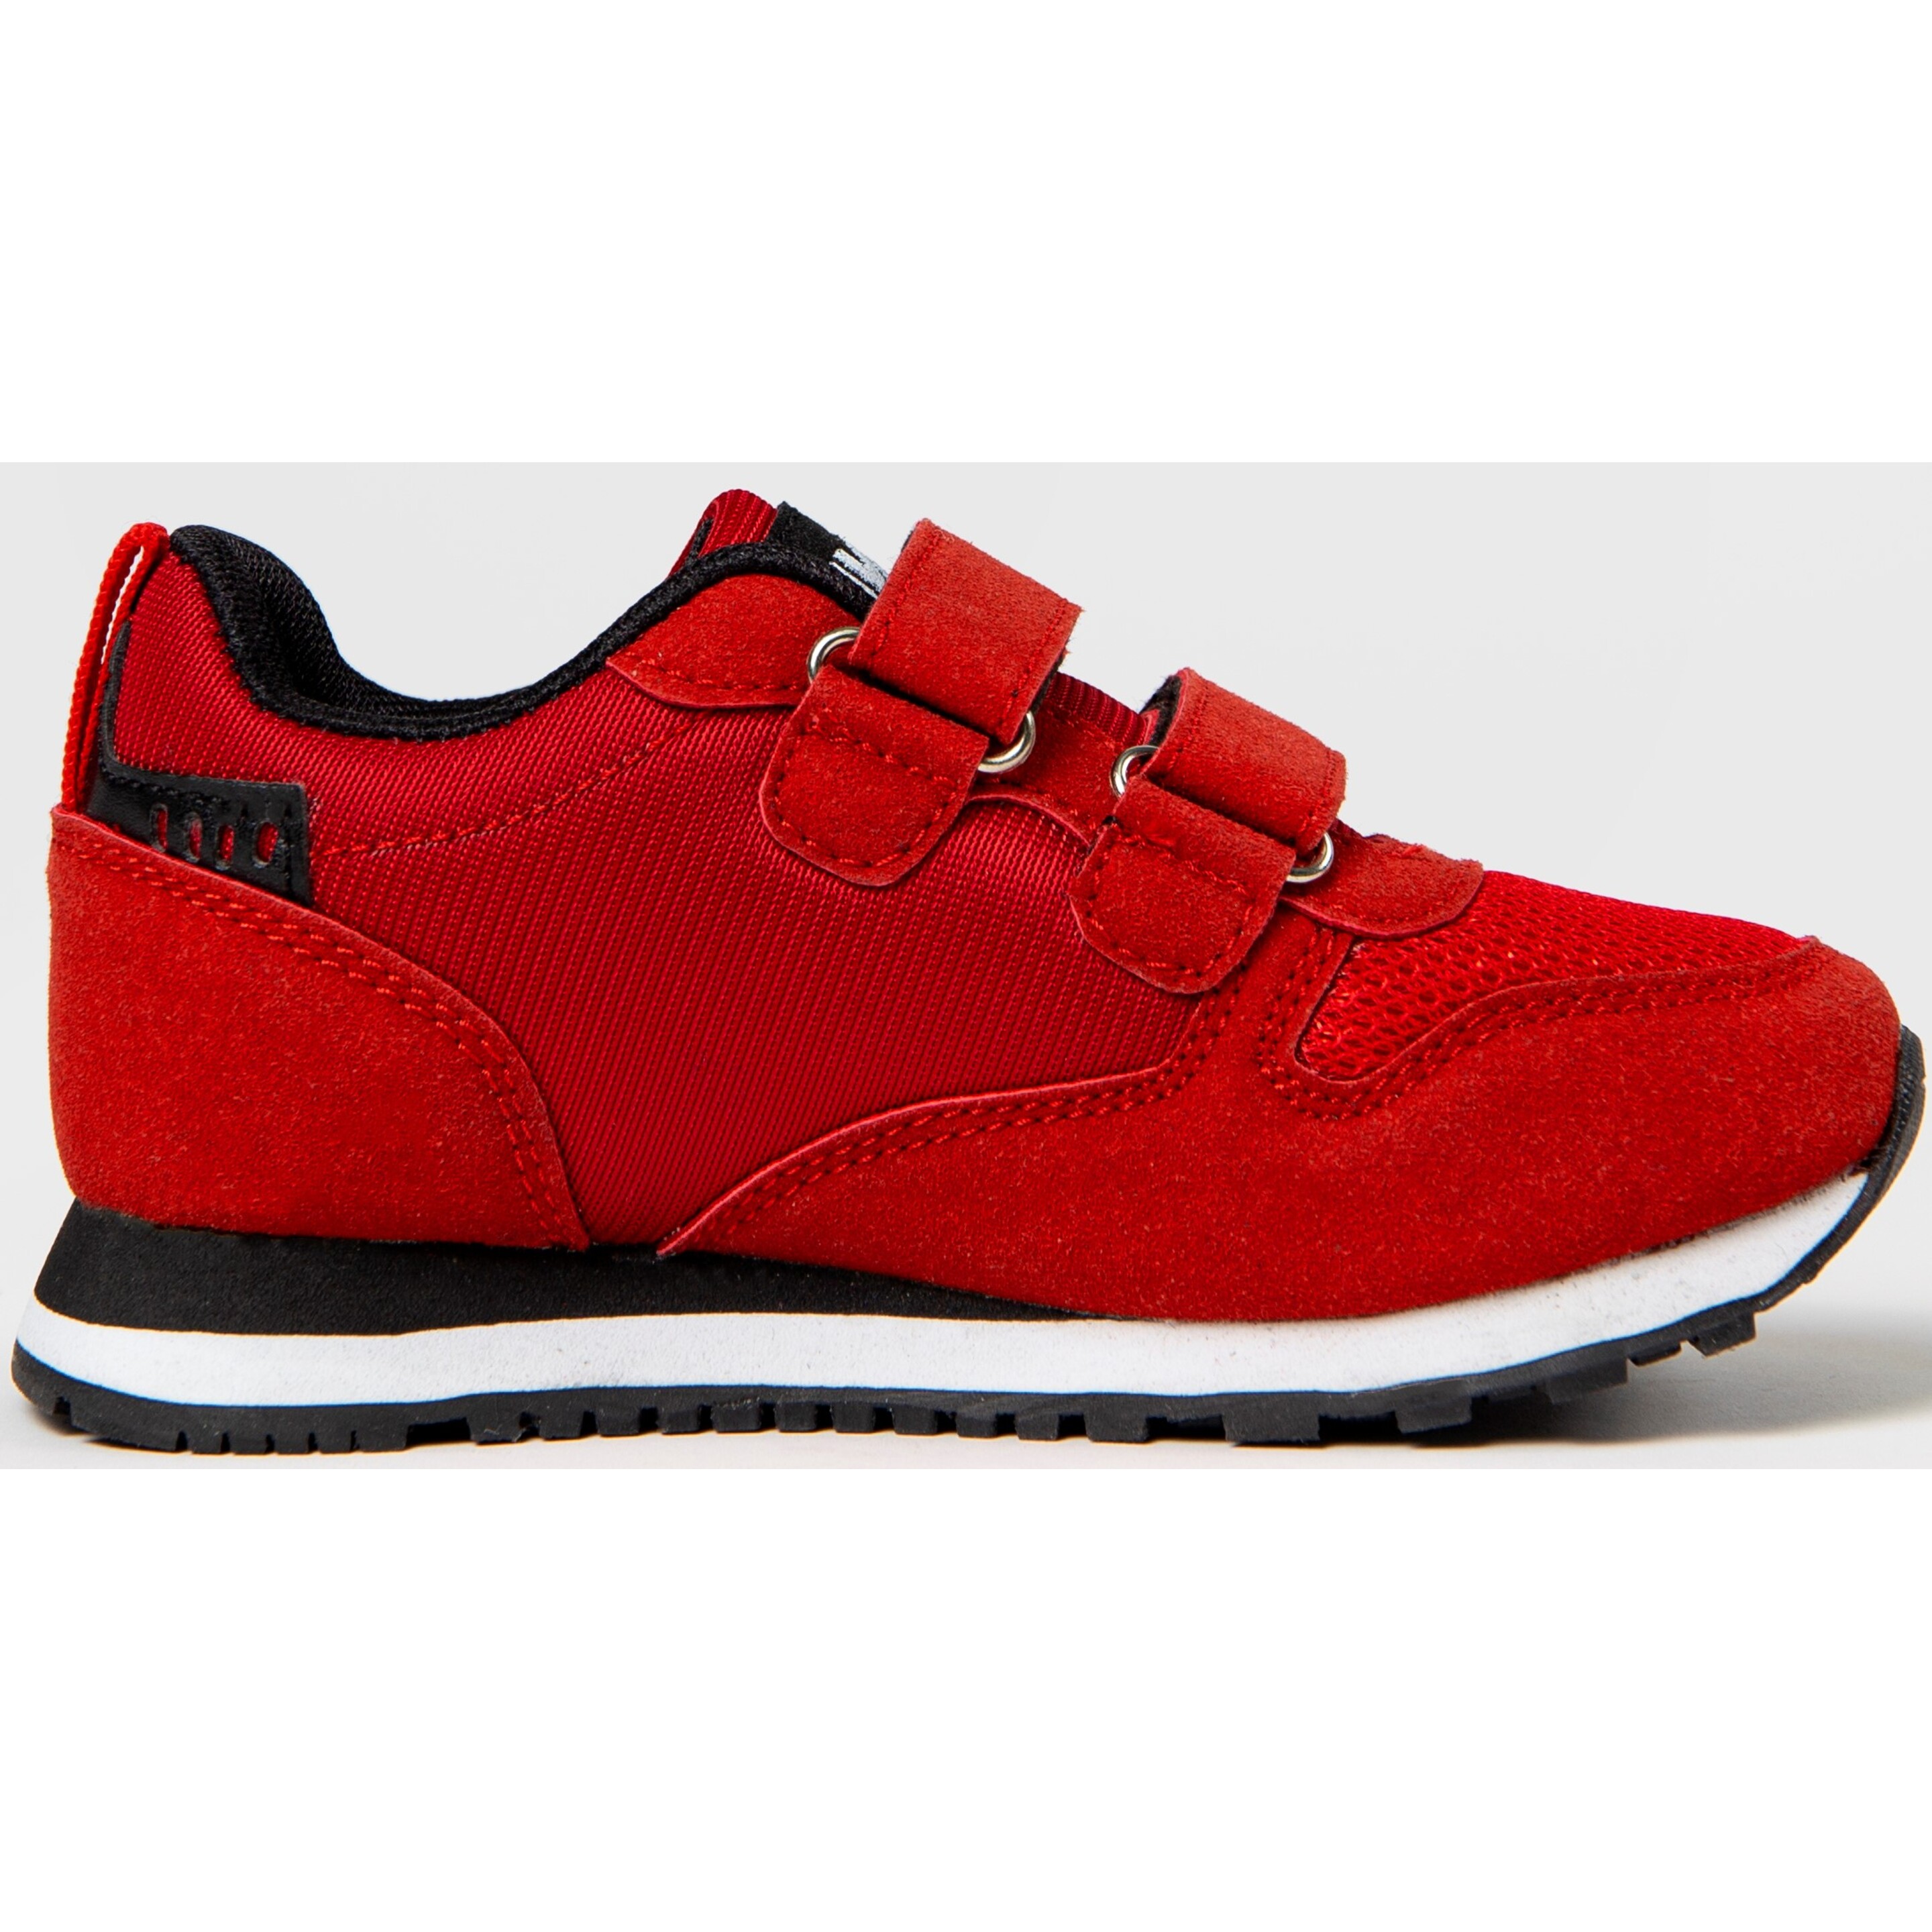 Zapatillas Jogging Avia Basico - Rojo - Calzado Deportivo Y Casual Avia  MKP